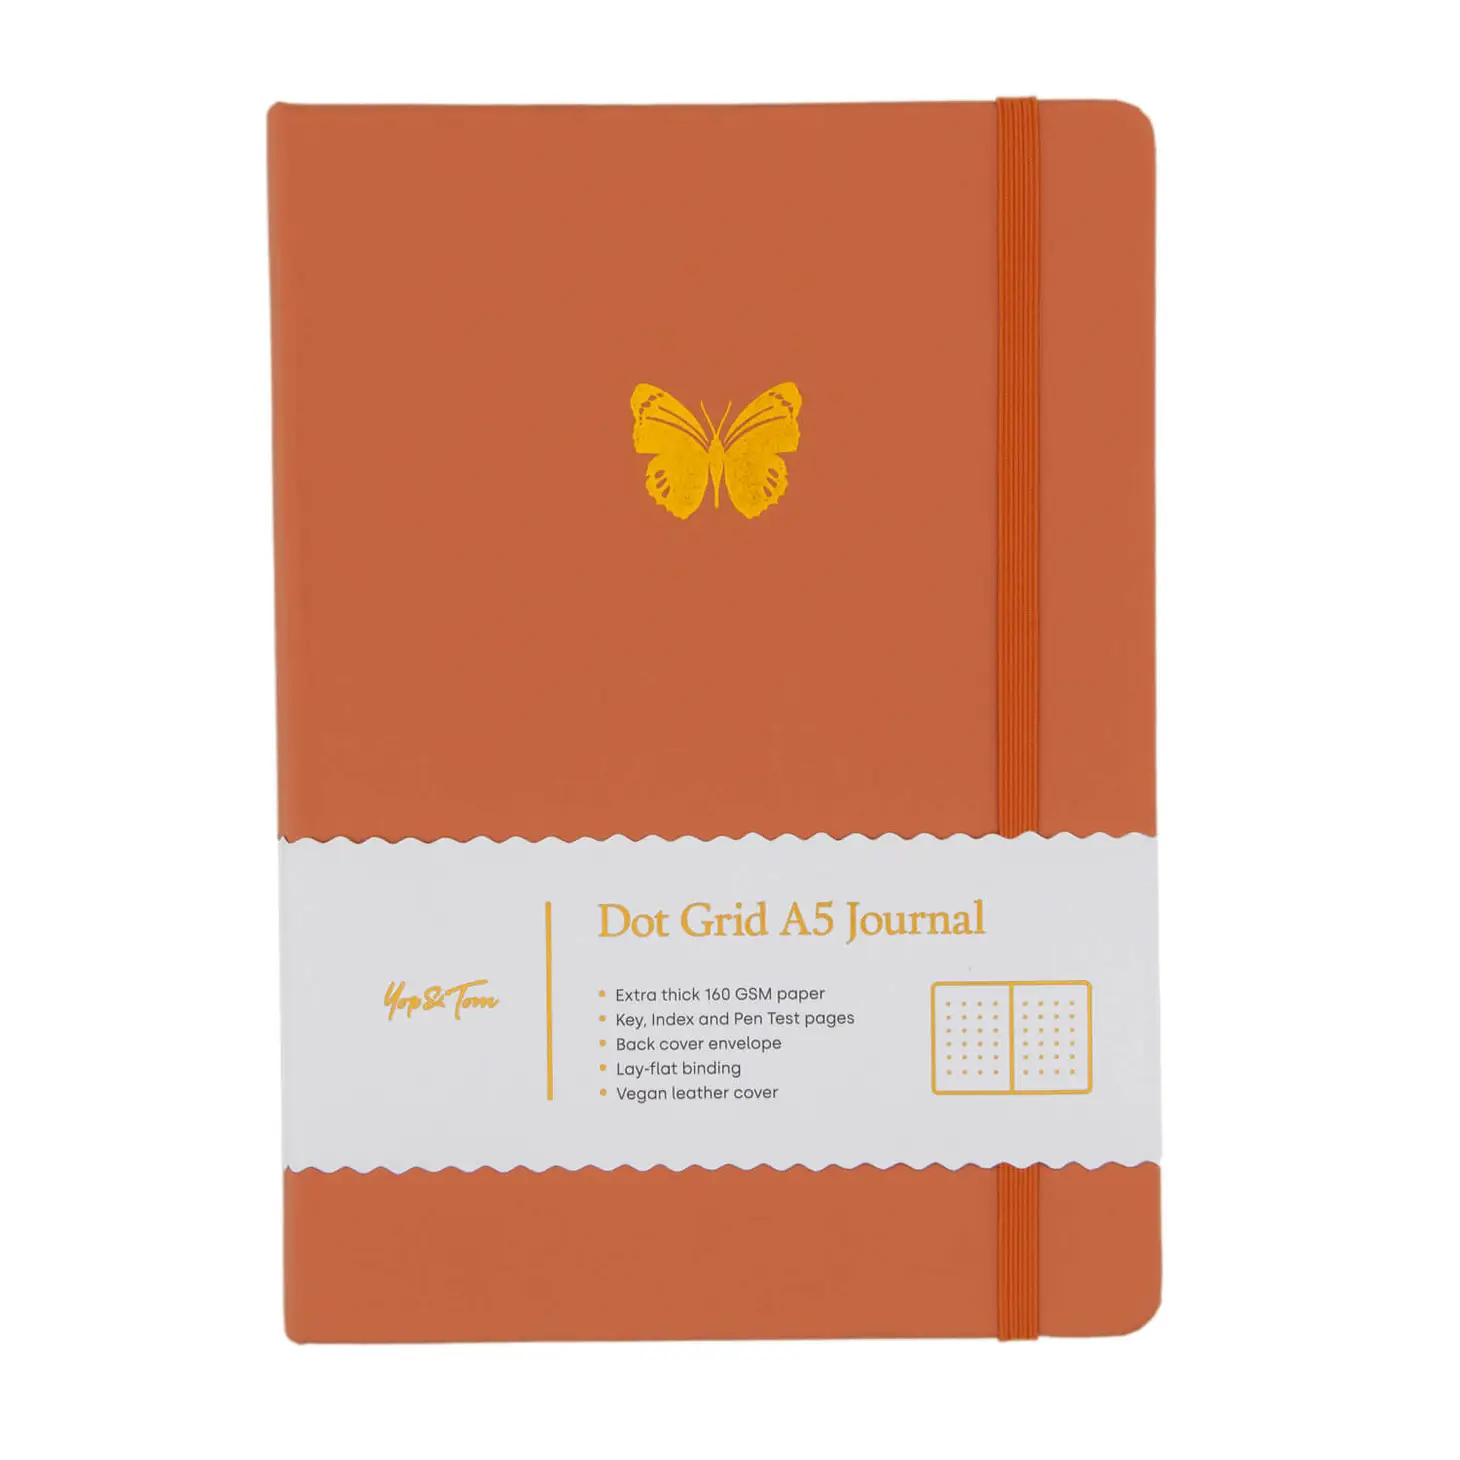 Yop & Tom A5 Dot Grid Journal - Butterfly